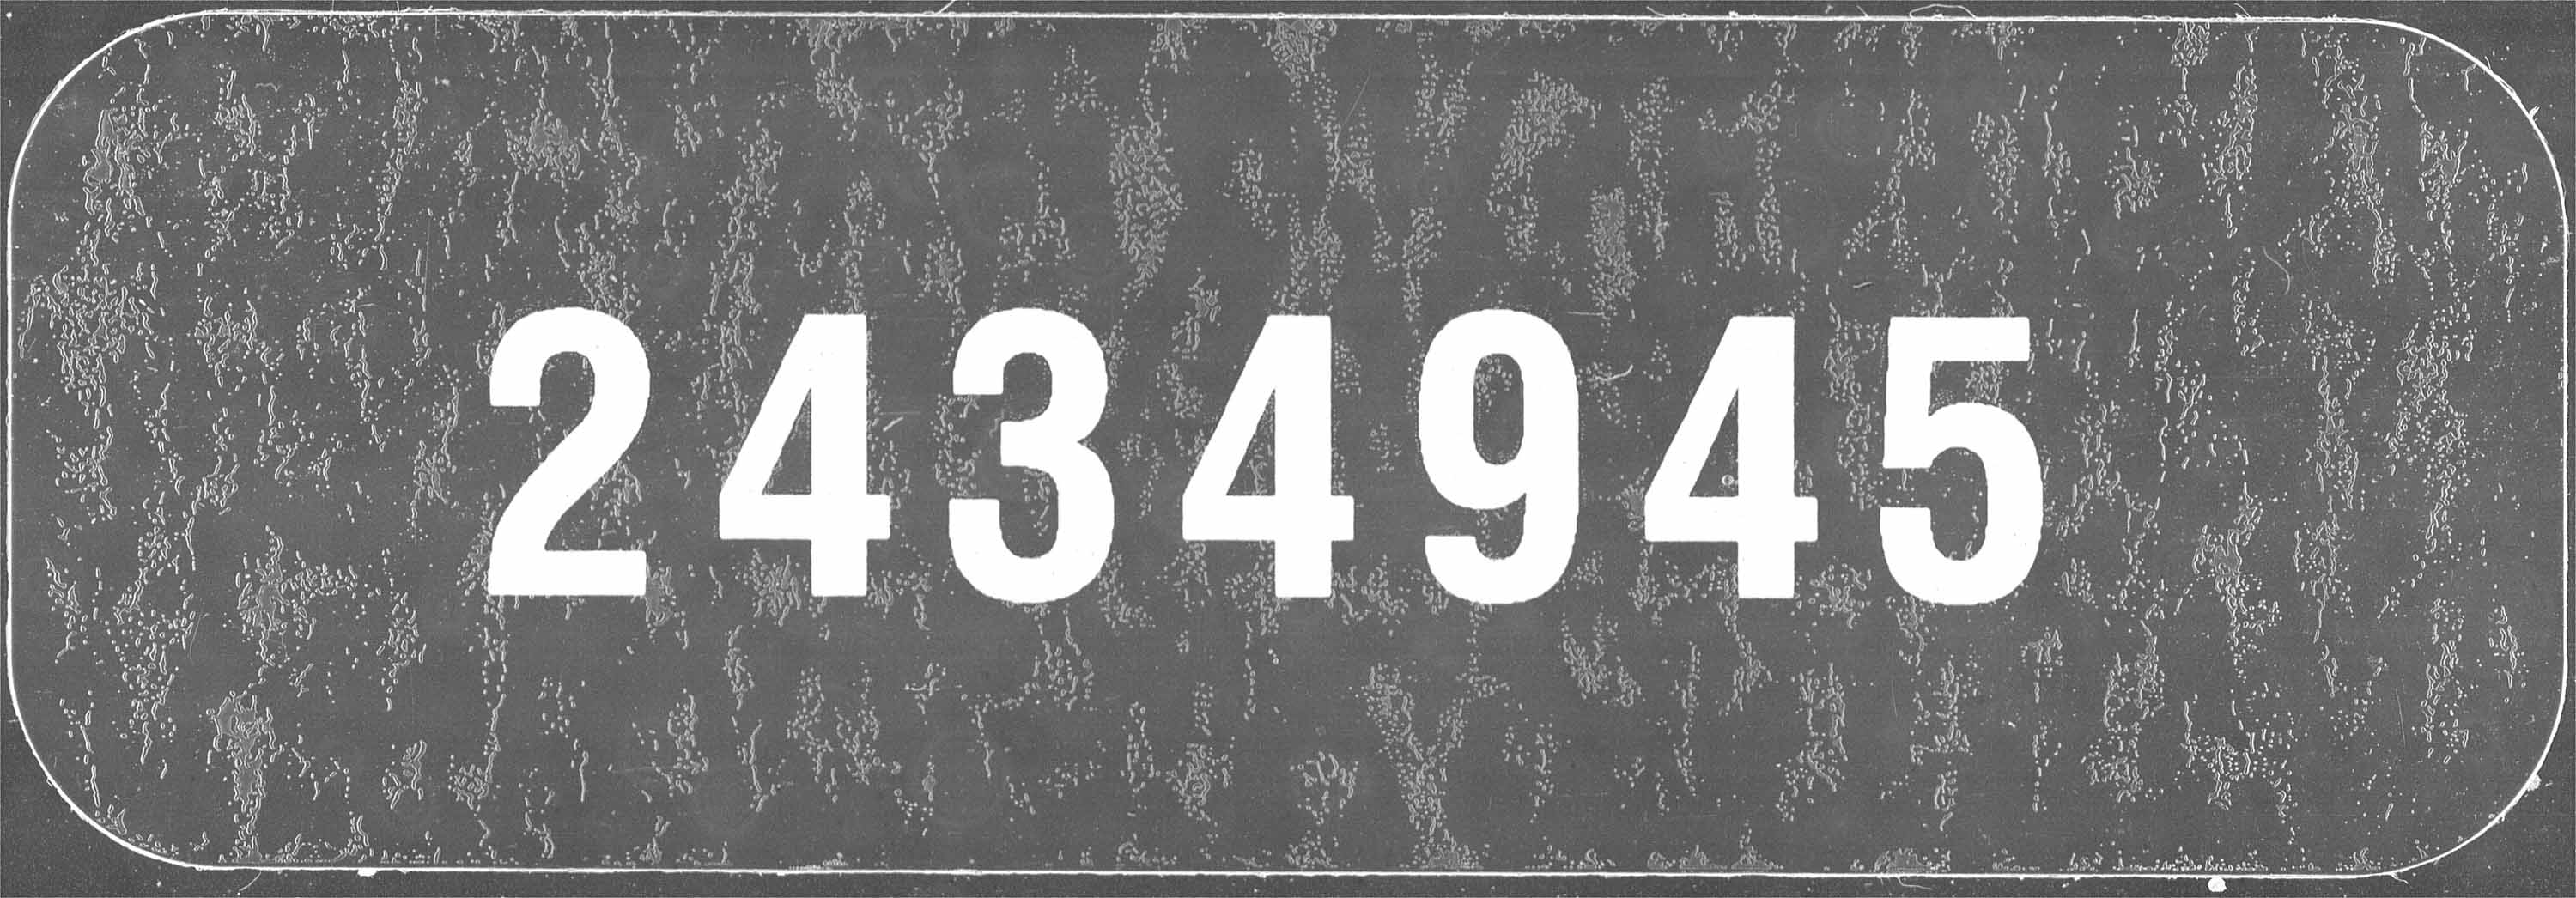 Titre : Recensement des provinces des prairies (1916) - N° d'enregistrement Mikan : 3800575 - Microforme : t-21930